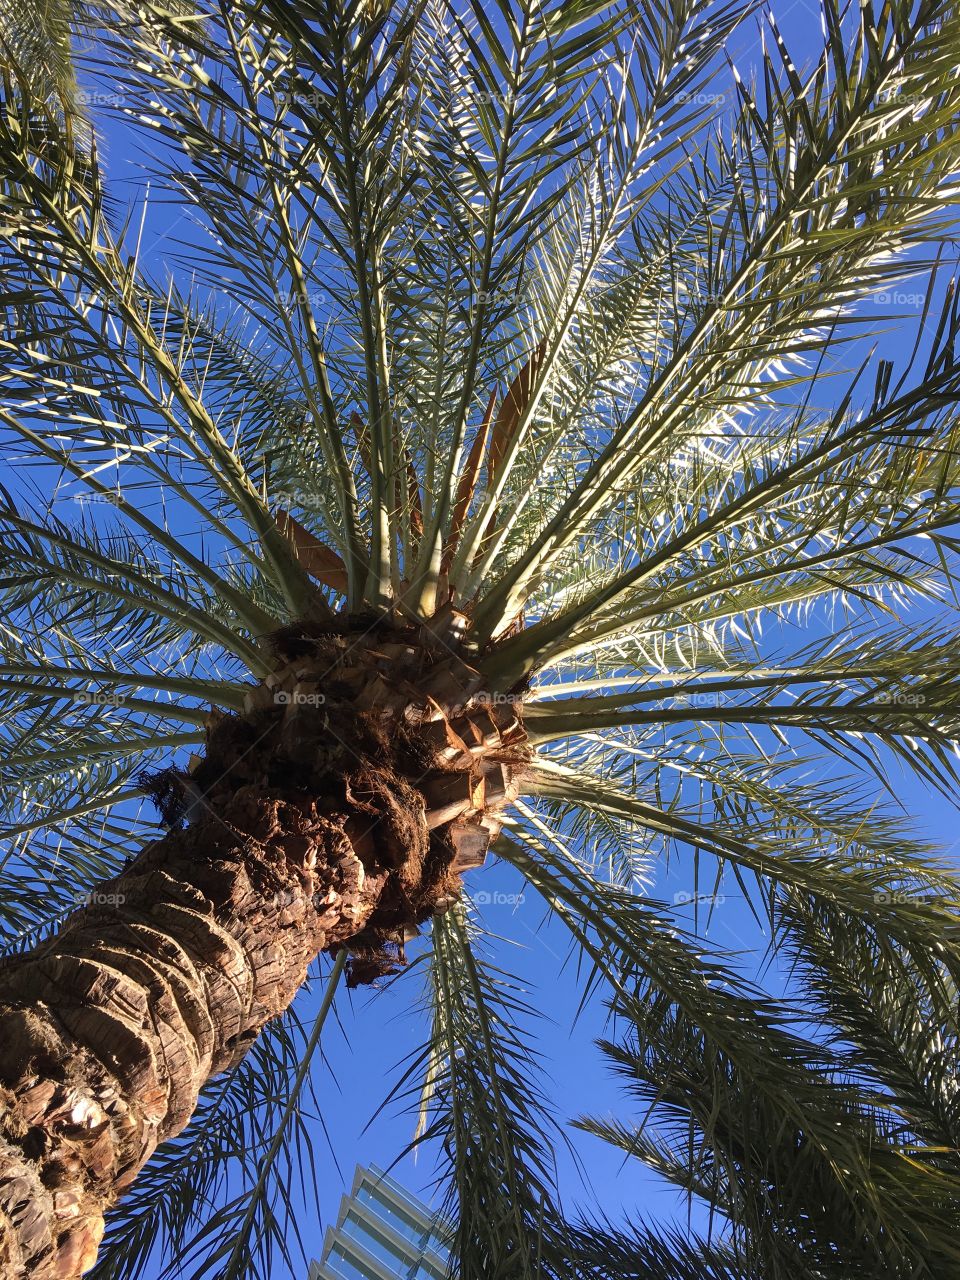 Palm tree in Las Vegas